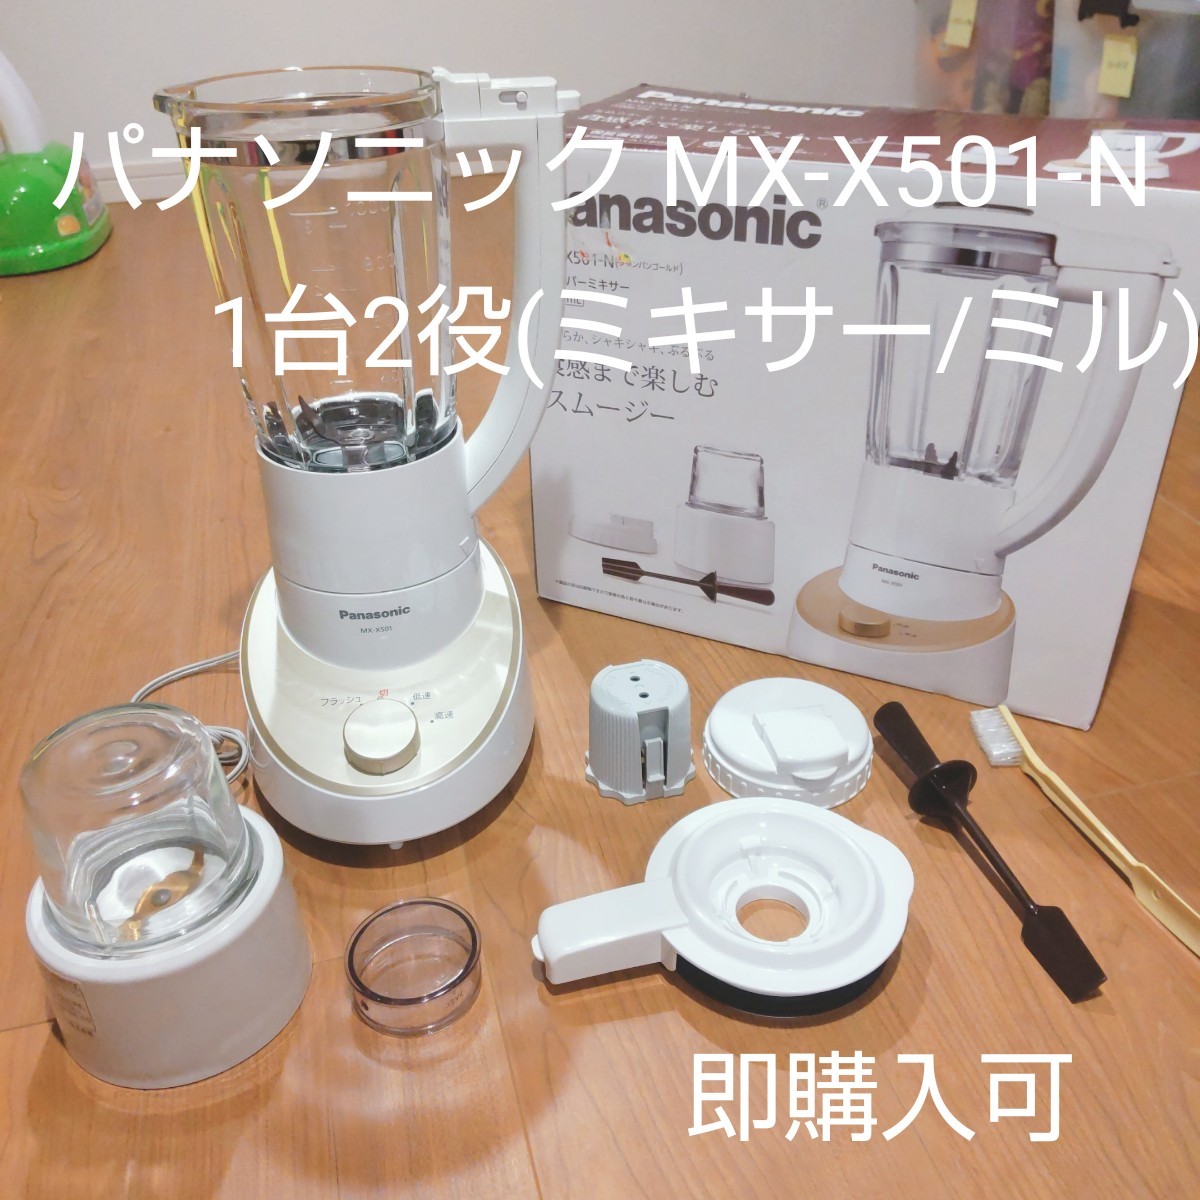 即購入可 パナソニック MX-X501-N ミキサー 1台2役(ミキサー/ミル